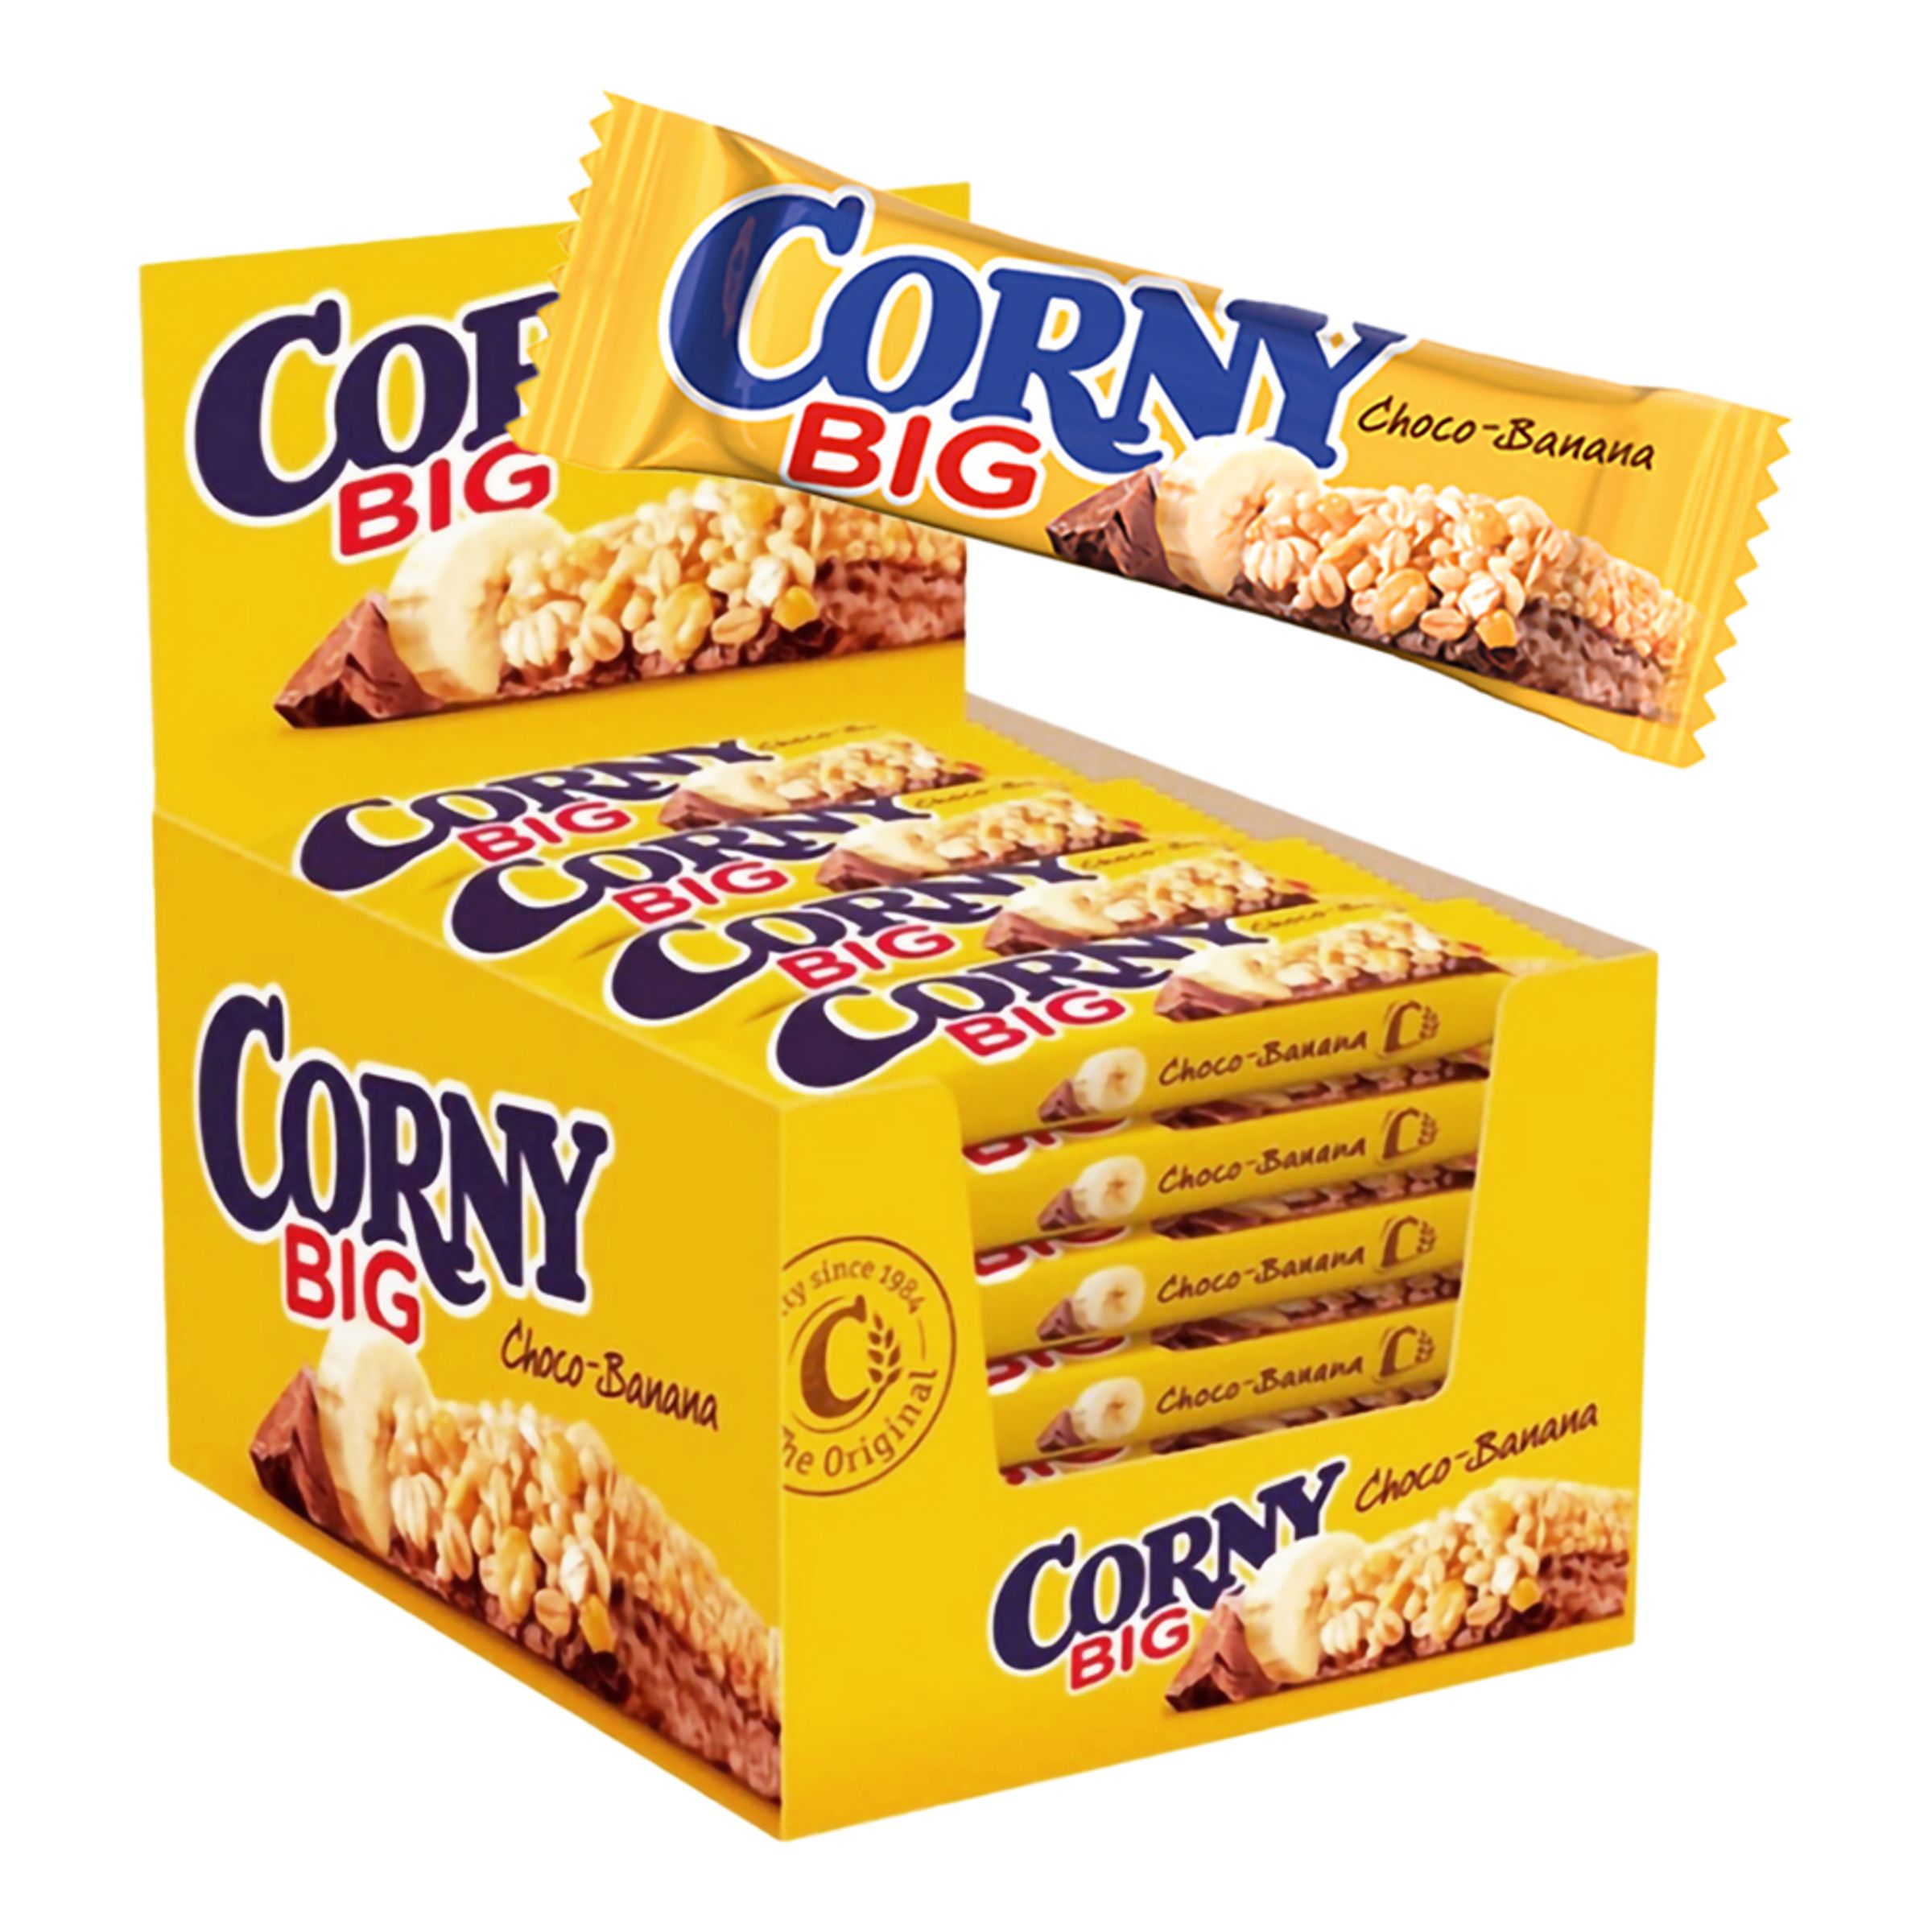 Corny Big Banan/Choklad Storpack - 24-pack